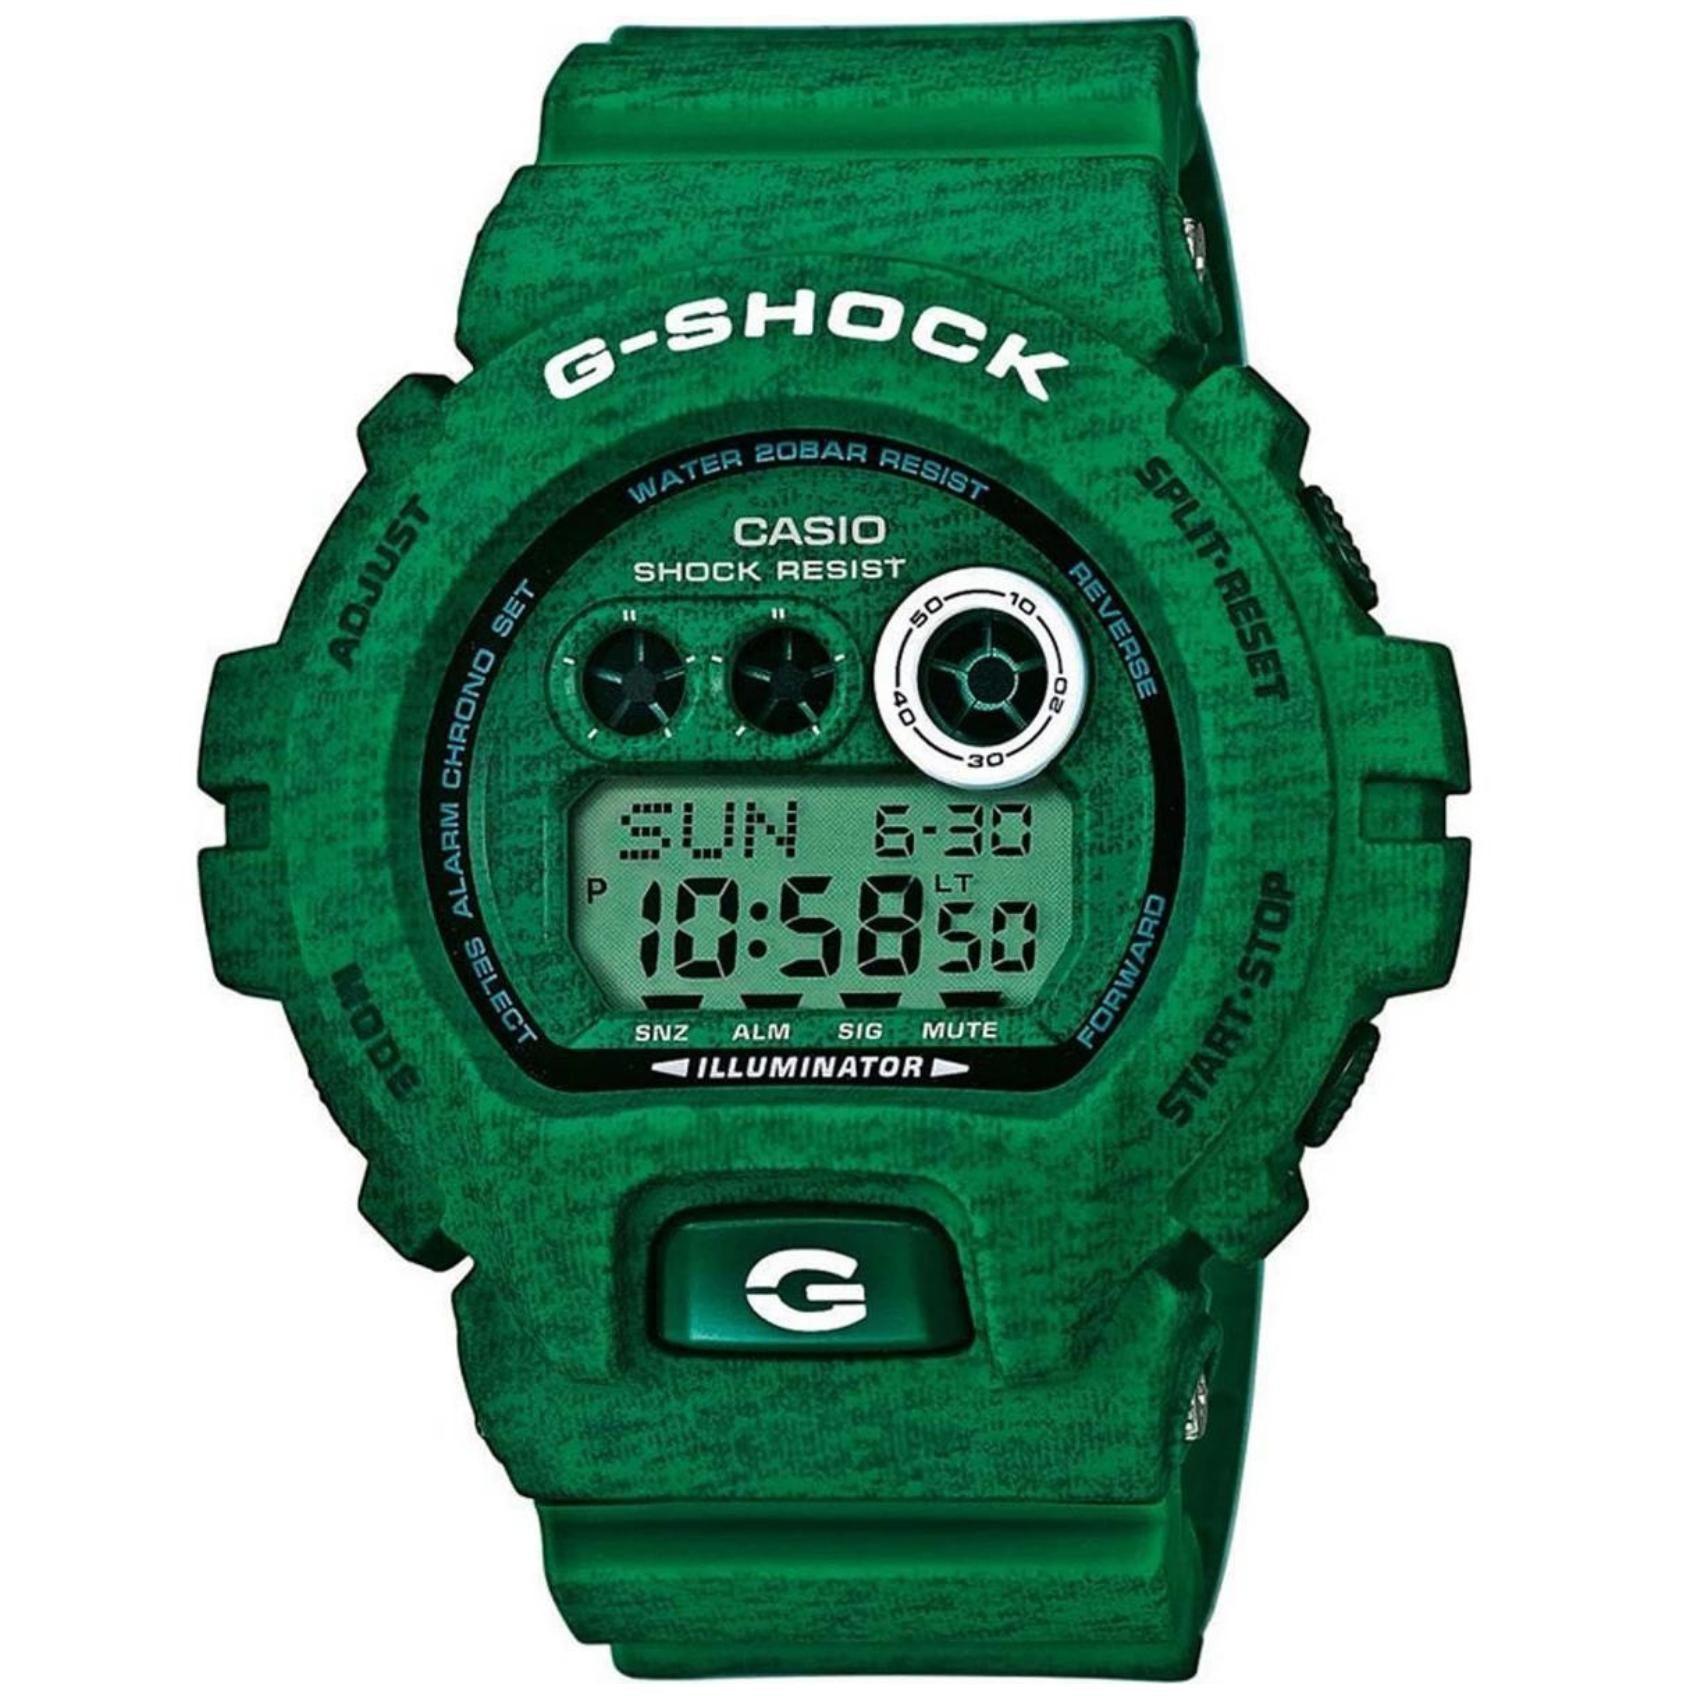 Καταδυτικό ρολόι χρονογράφος Casio G-Shock GD-X6900HT-3ER με πράσινο λουράκι, πράσινο καντράν και στεγανότητα 20ATM-200Μ.